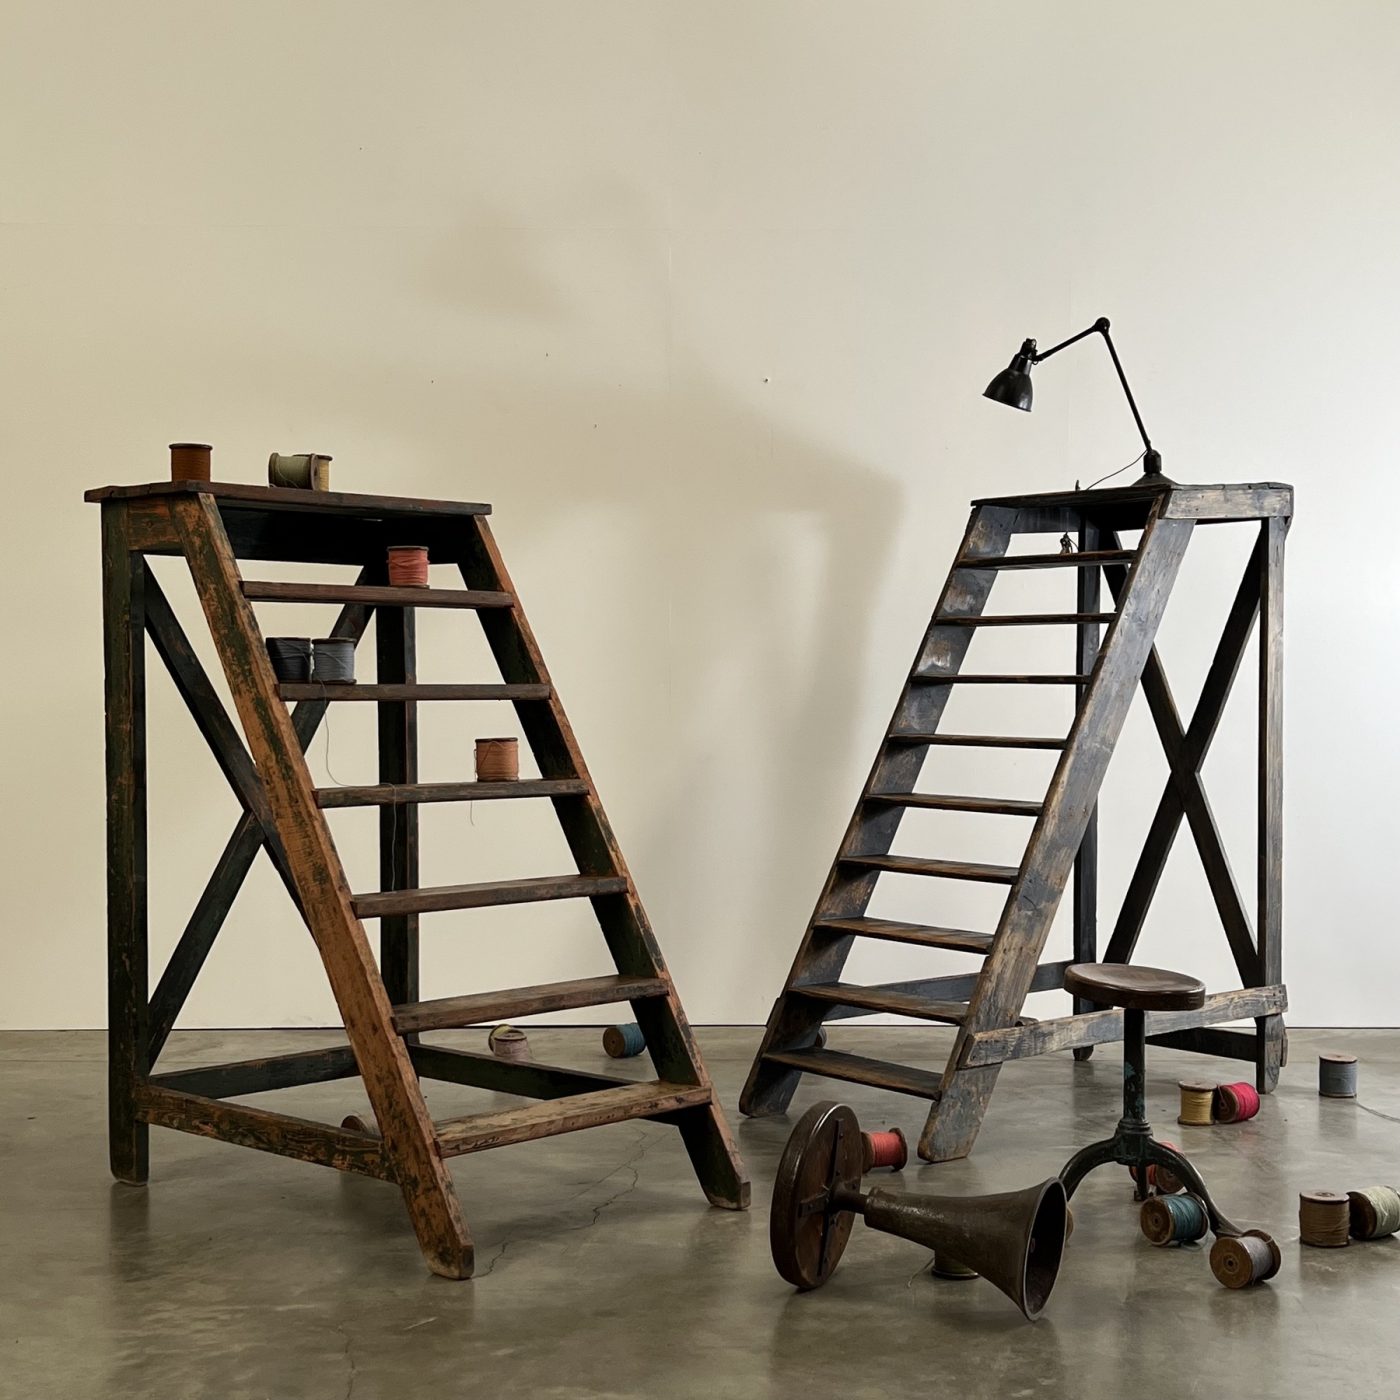 objet-vagabond-painted-ladders0003